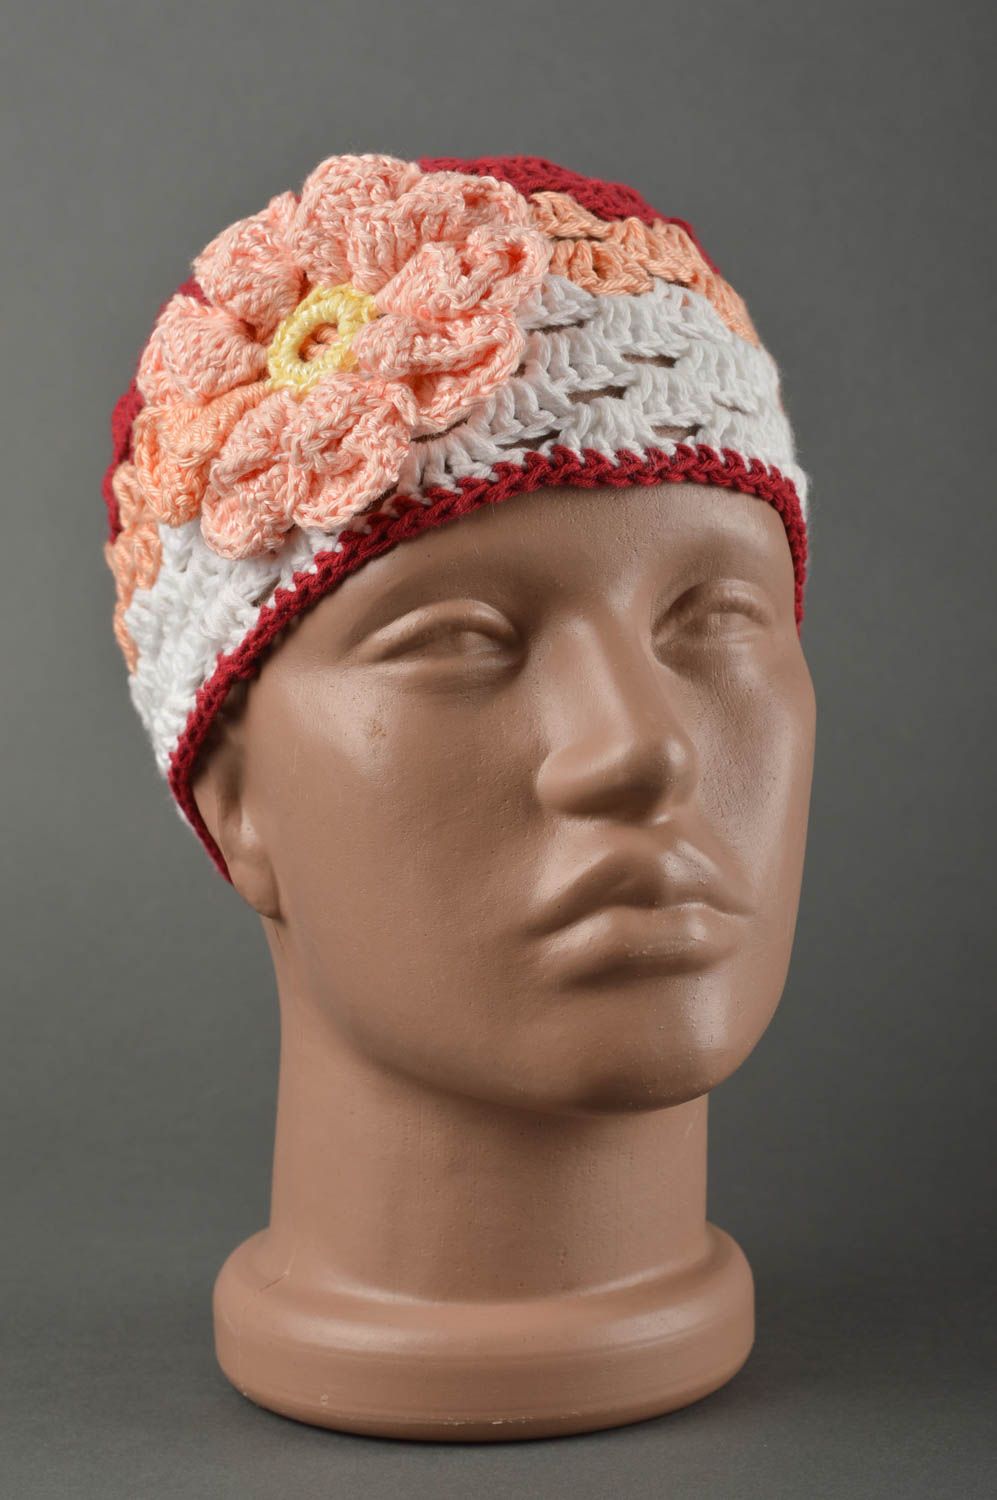 Вязаная шапка для детей хэндмэйд шапочка на девочку весенняя шапка персиковая фото 1